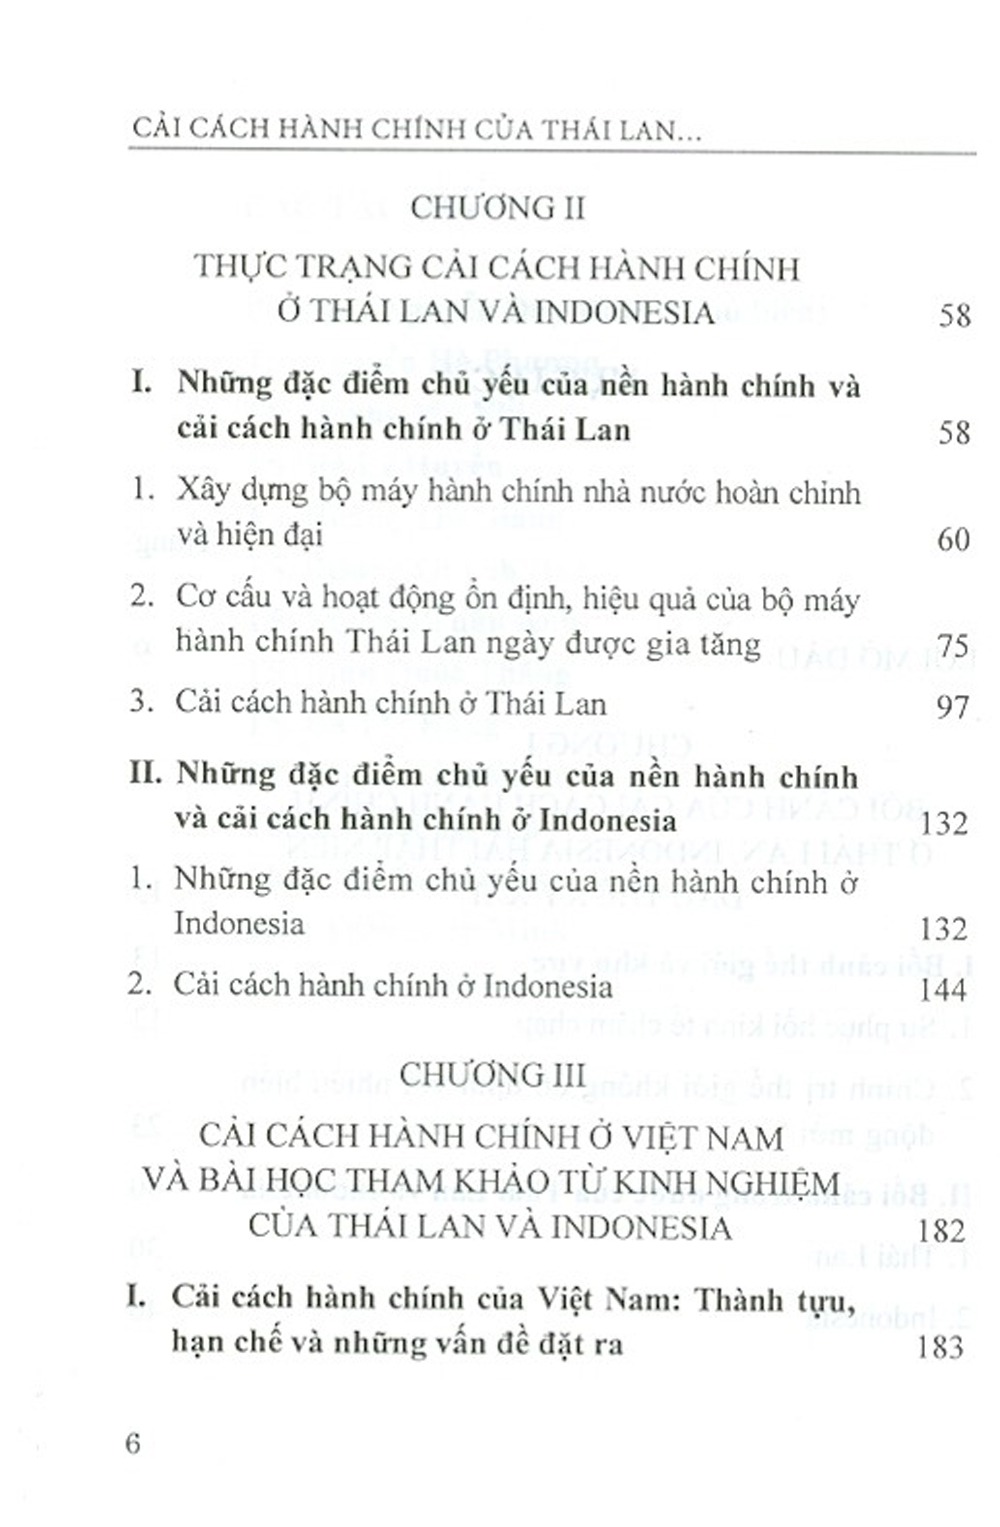 Cải Cách Hành Chính Của Thái Lan, Indonesia Hai Thập Niên Đầu Thế Kỷ Xxi Và Bài Học Kinh Nghiệm Cho Việt Nam (Sách Tham Khảo)